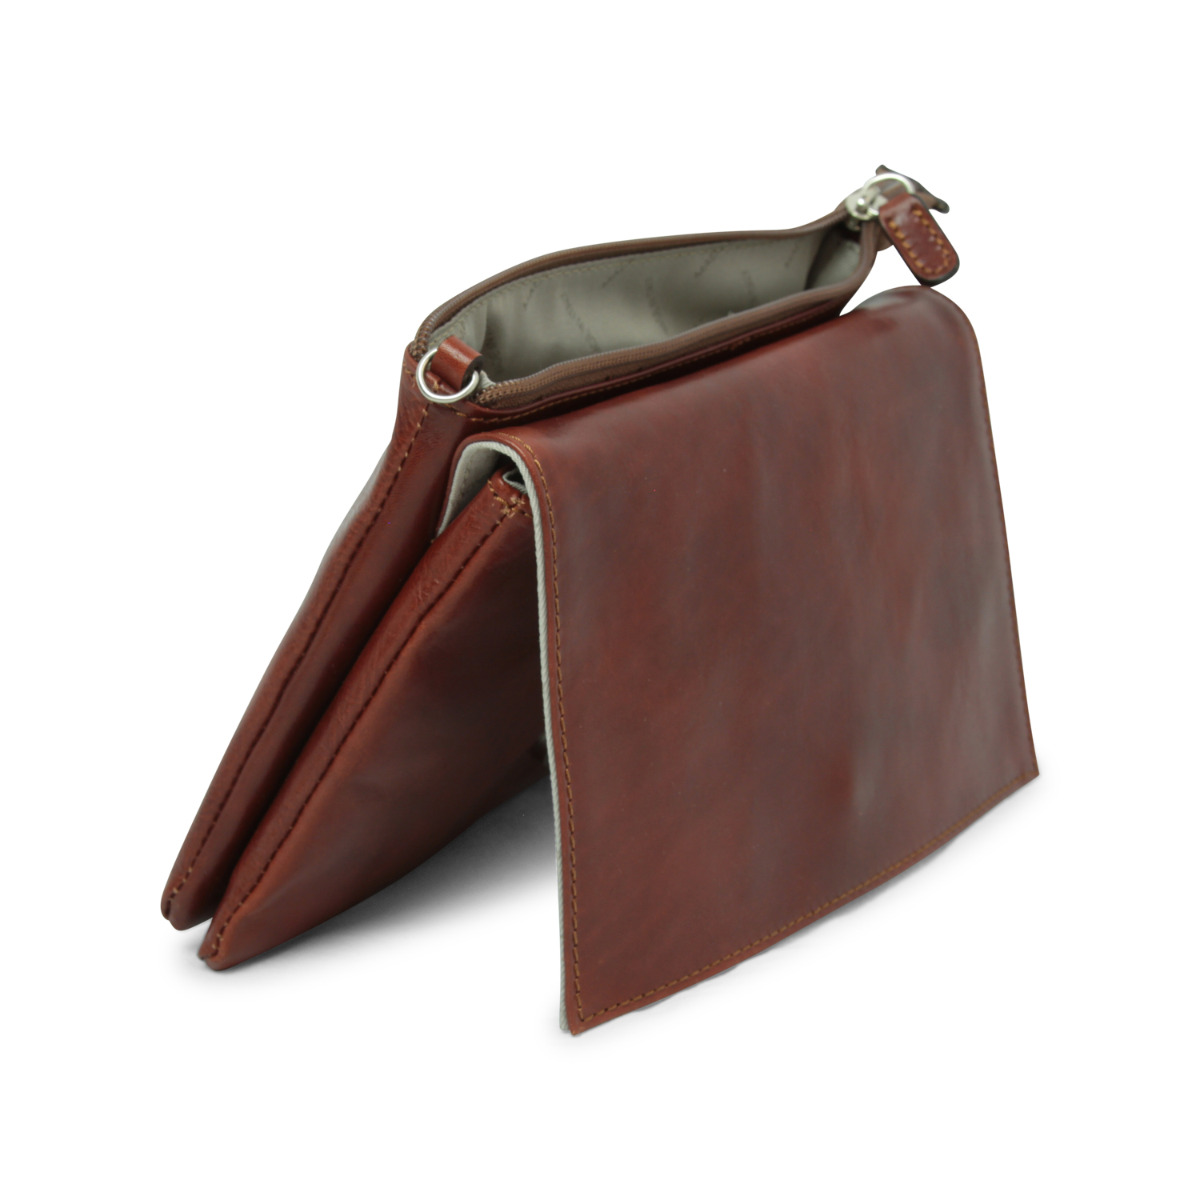 Full grain leather shoulder bag - brown|413293MA|Old Angler Firenze